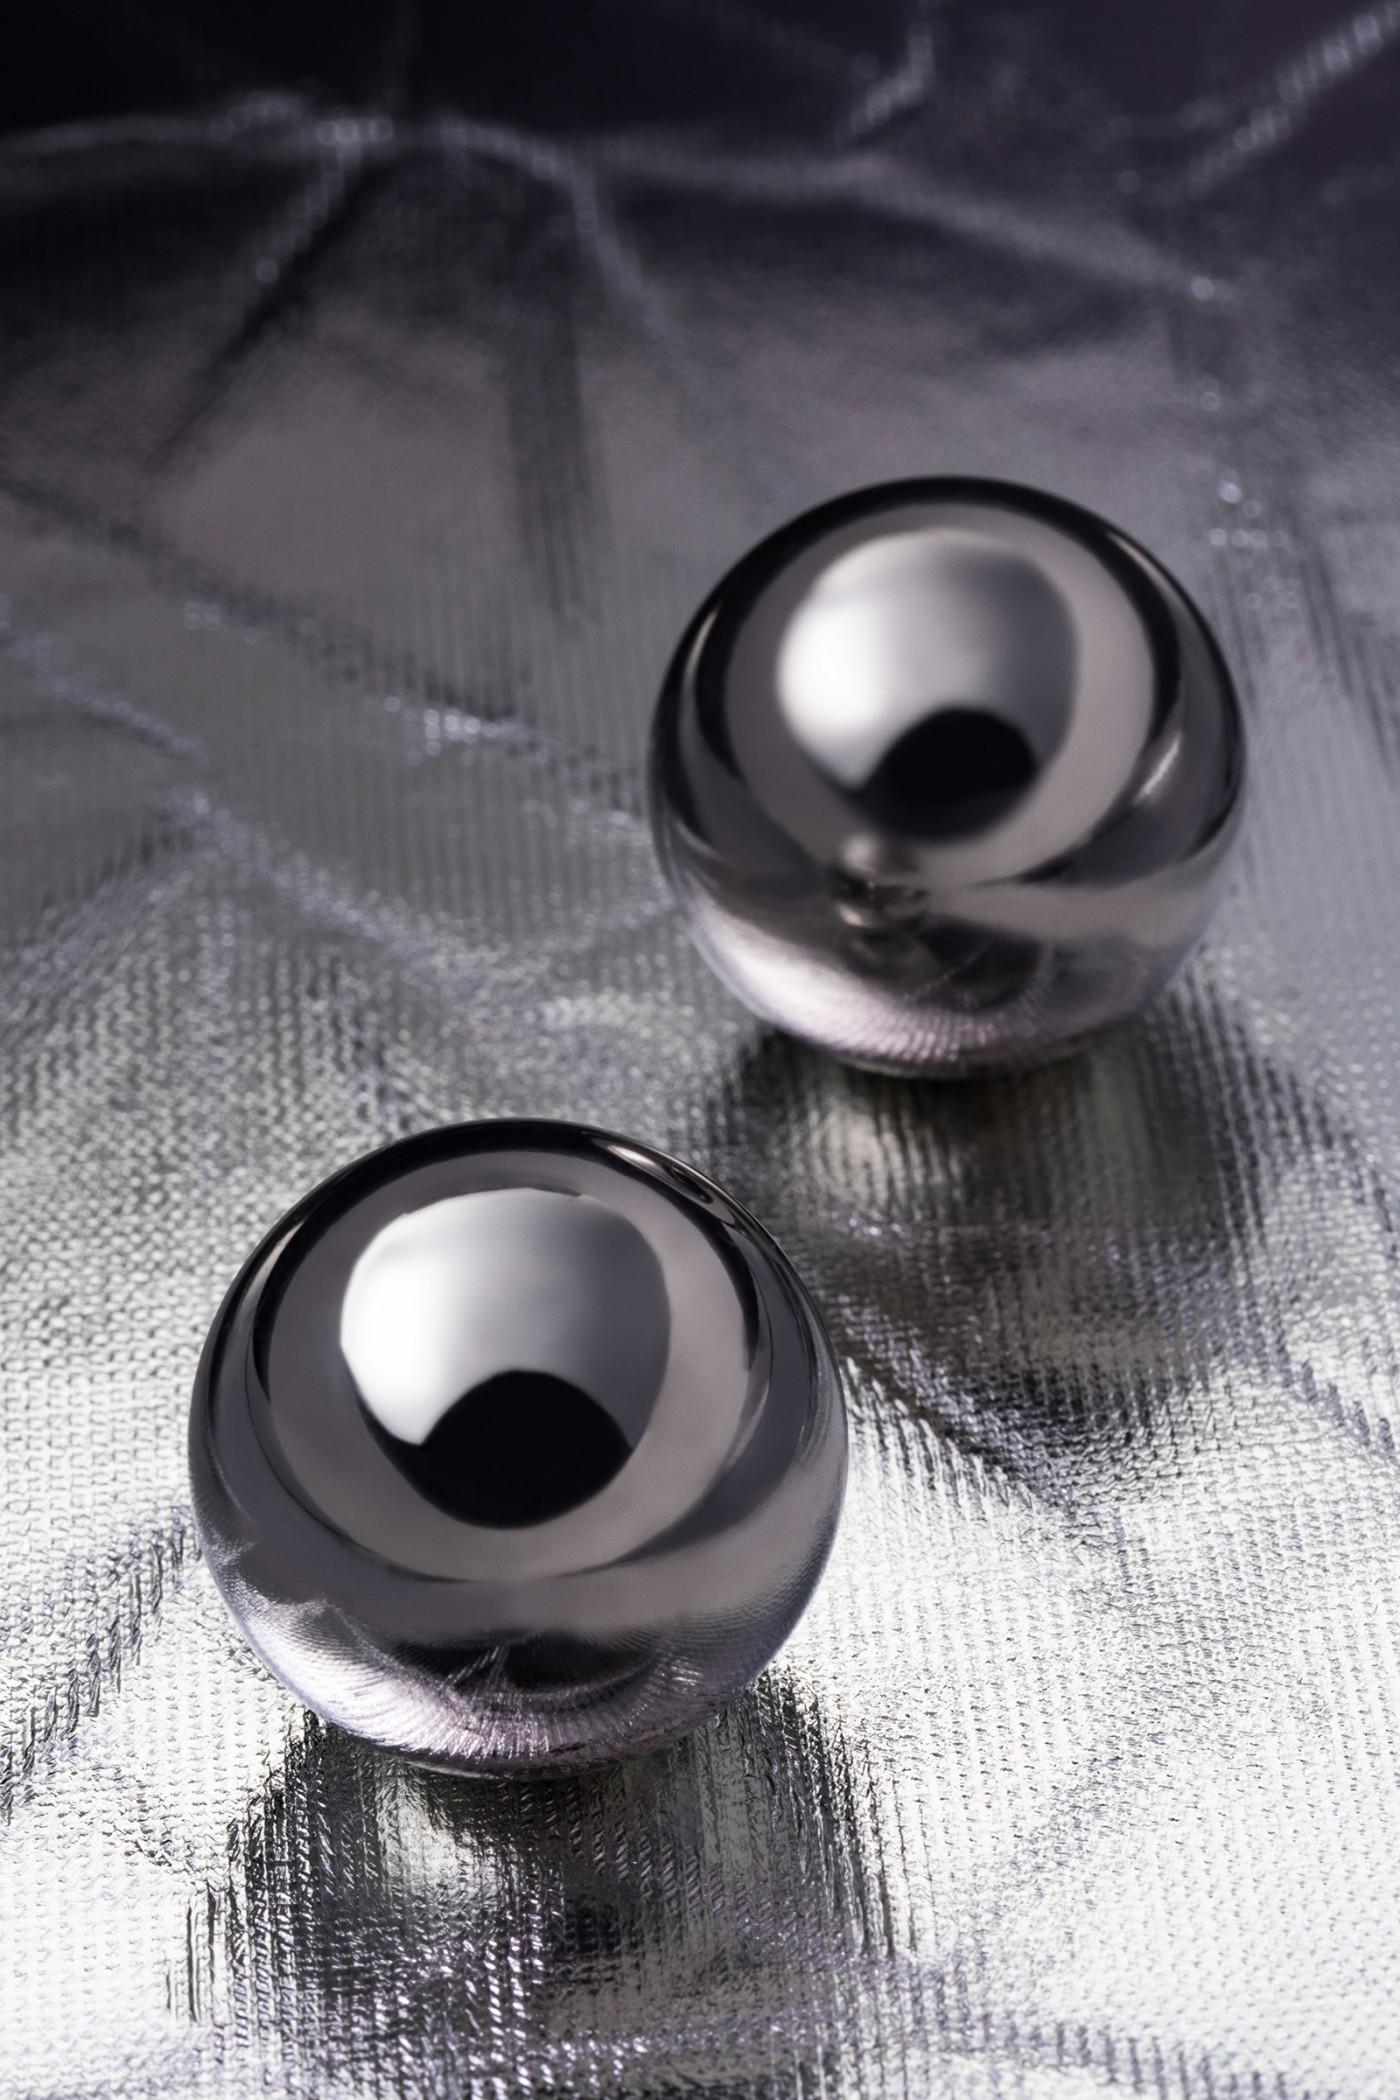 Вагинальные шарики Metal by TOYFA, металл, серебристый, Ø 2,5 см